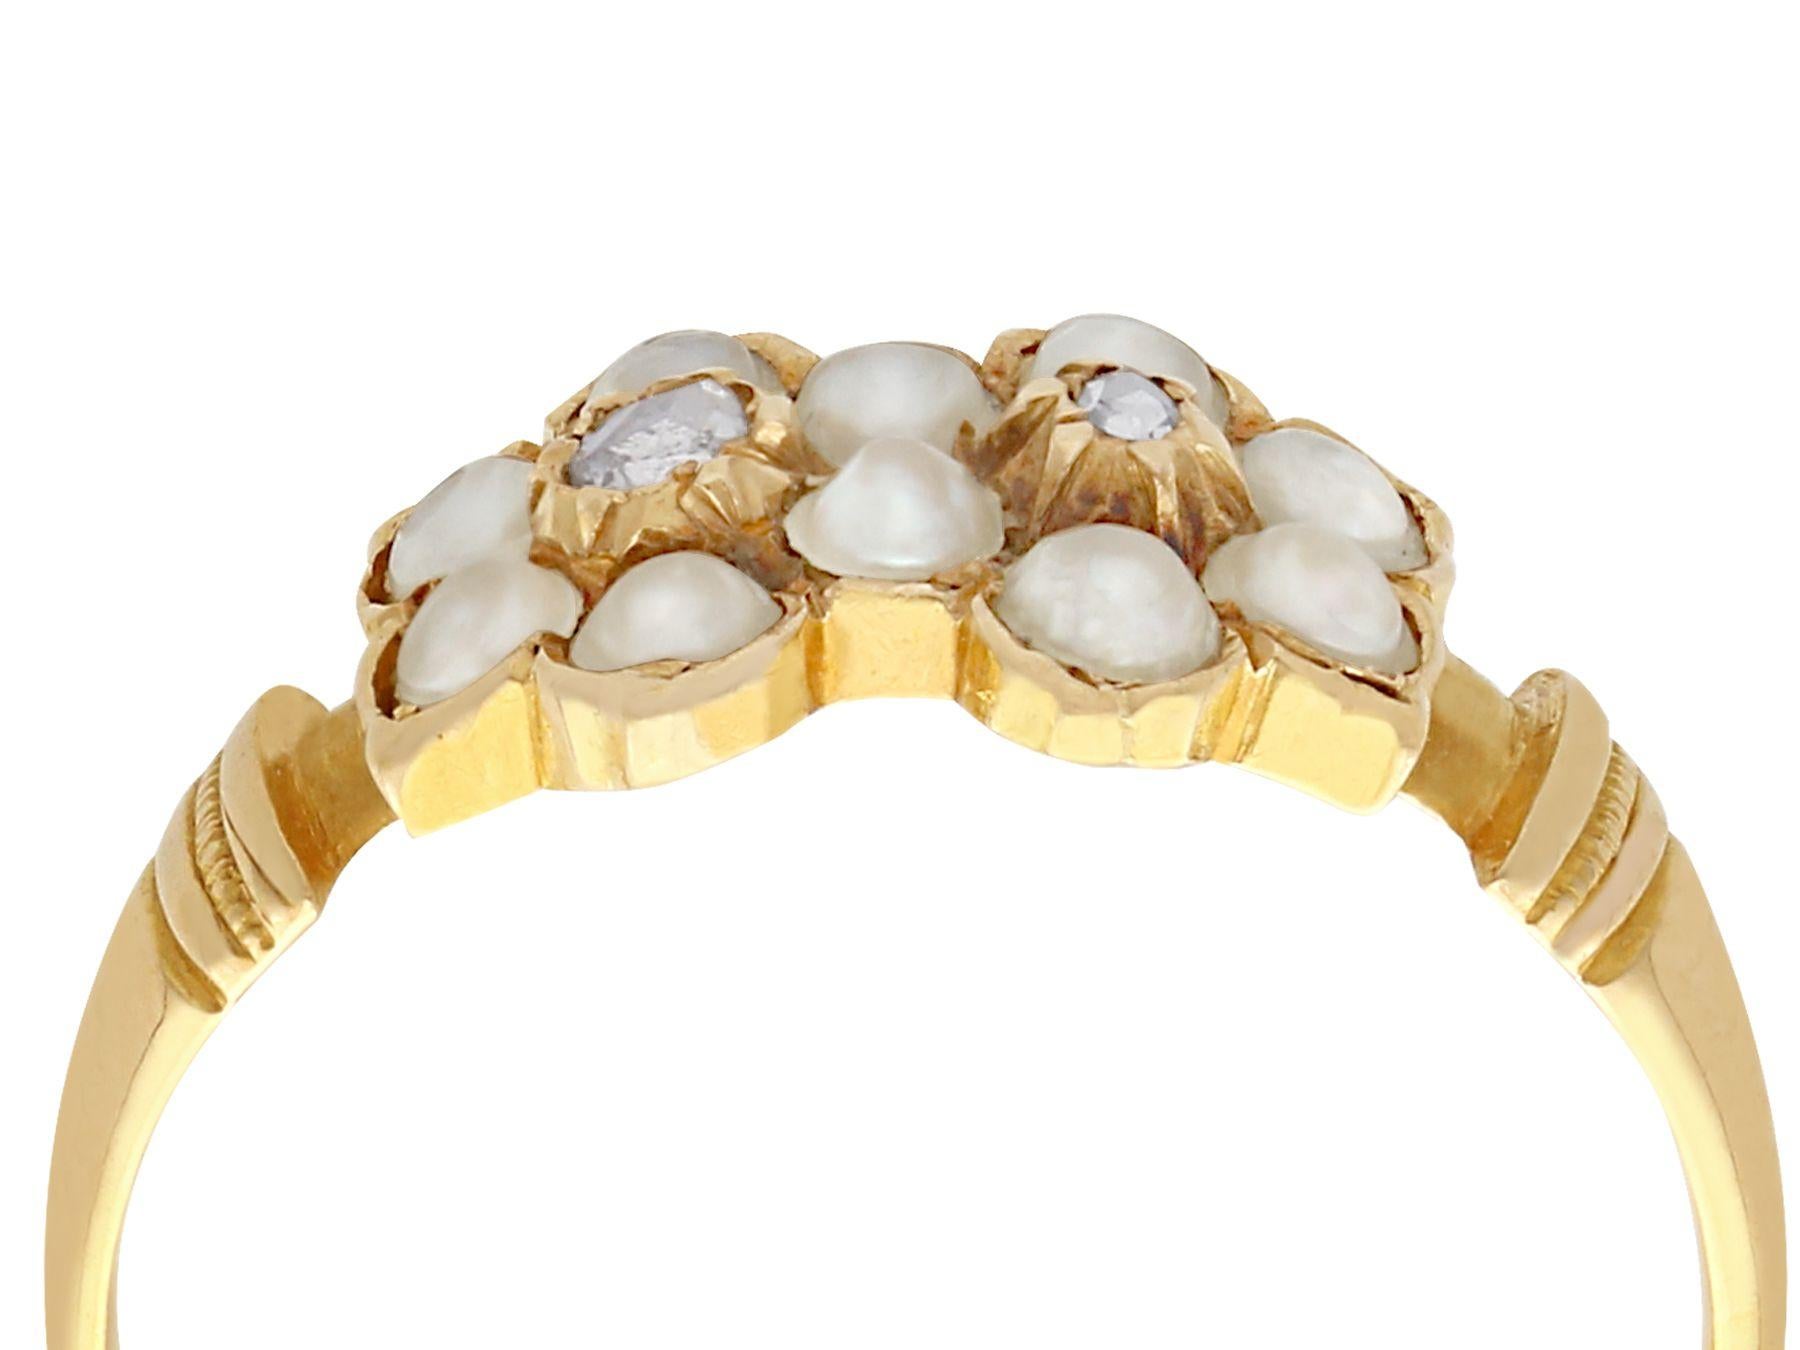 Eine feine und beeindruckende antiken viktorianischen Samen Perle und 0,05 Karat Diamant und 18 Karat Gelbgold Kleid Ring; Teil unserer antiken Schmuck / Estate Jewelry Sammlungen.

Dieser feine antike Kleiderring ist aus 18 Karat Gelbgold